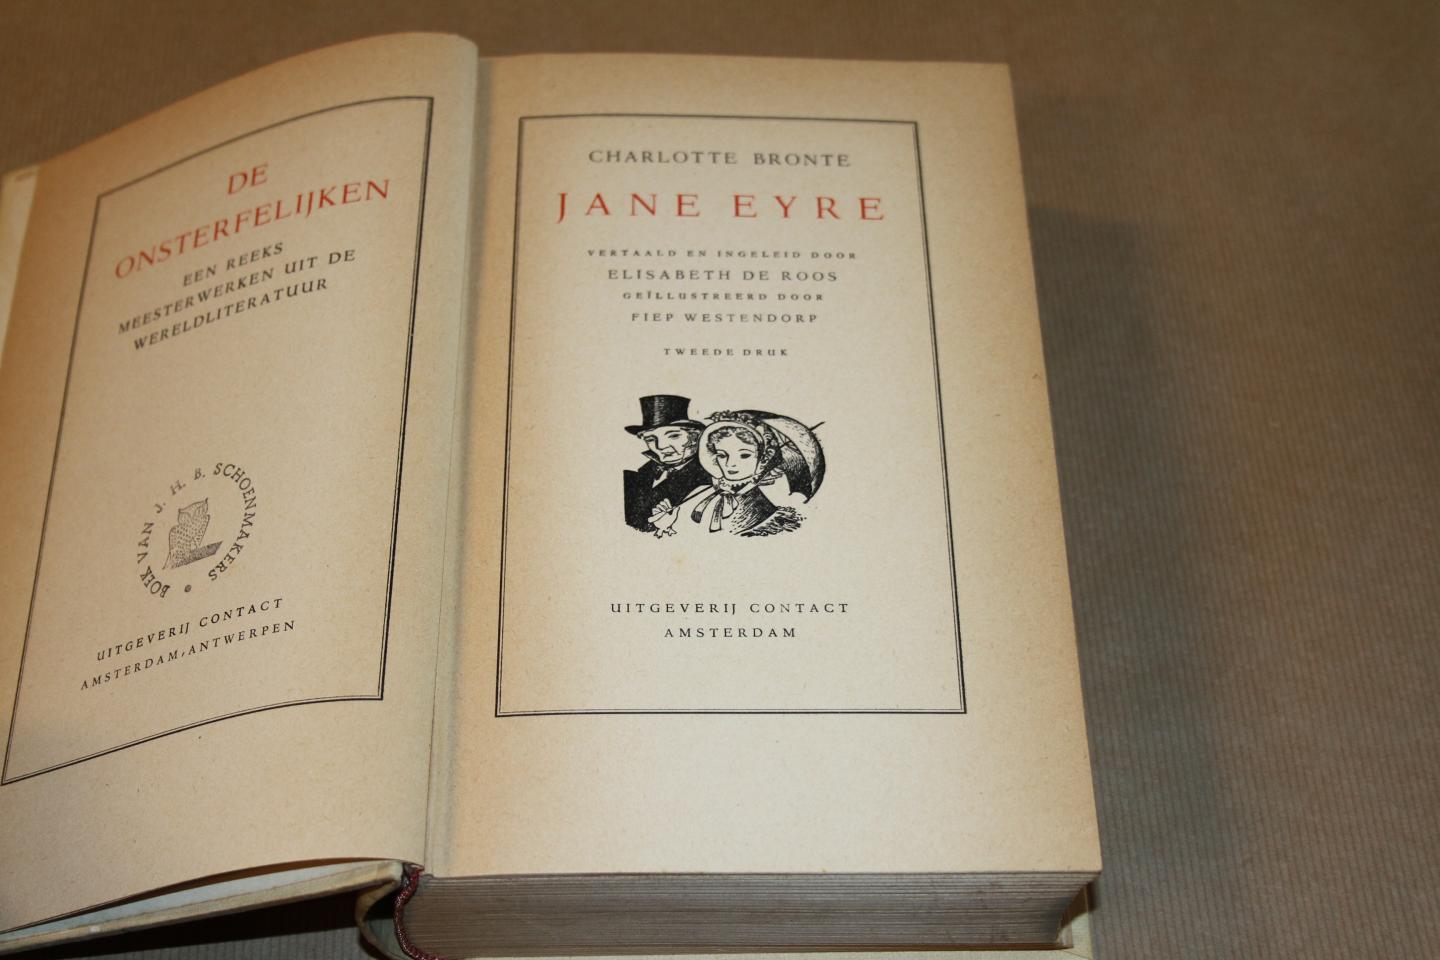 Charlotte Brönte /  Illustraties  Fiep Westendorp - Jane Eyre   (De onsterfelijken)